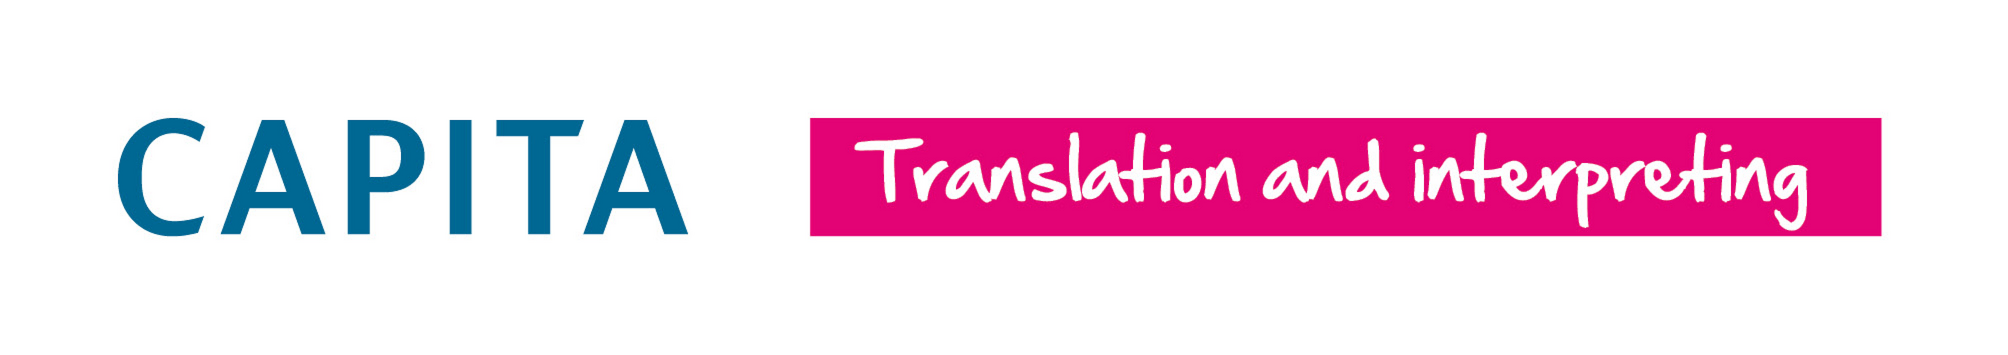 Capita Translation and Interpreting